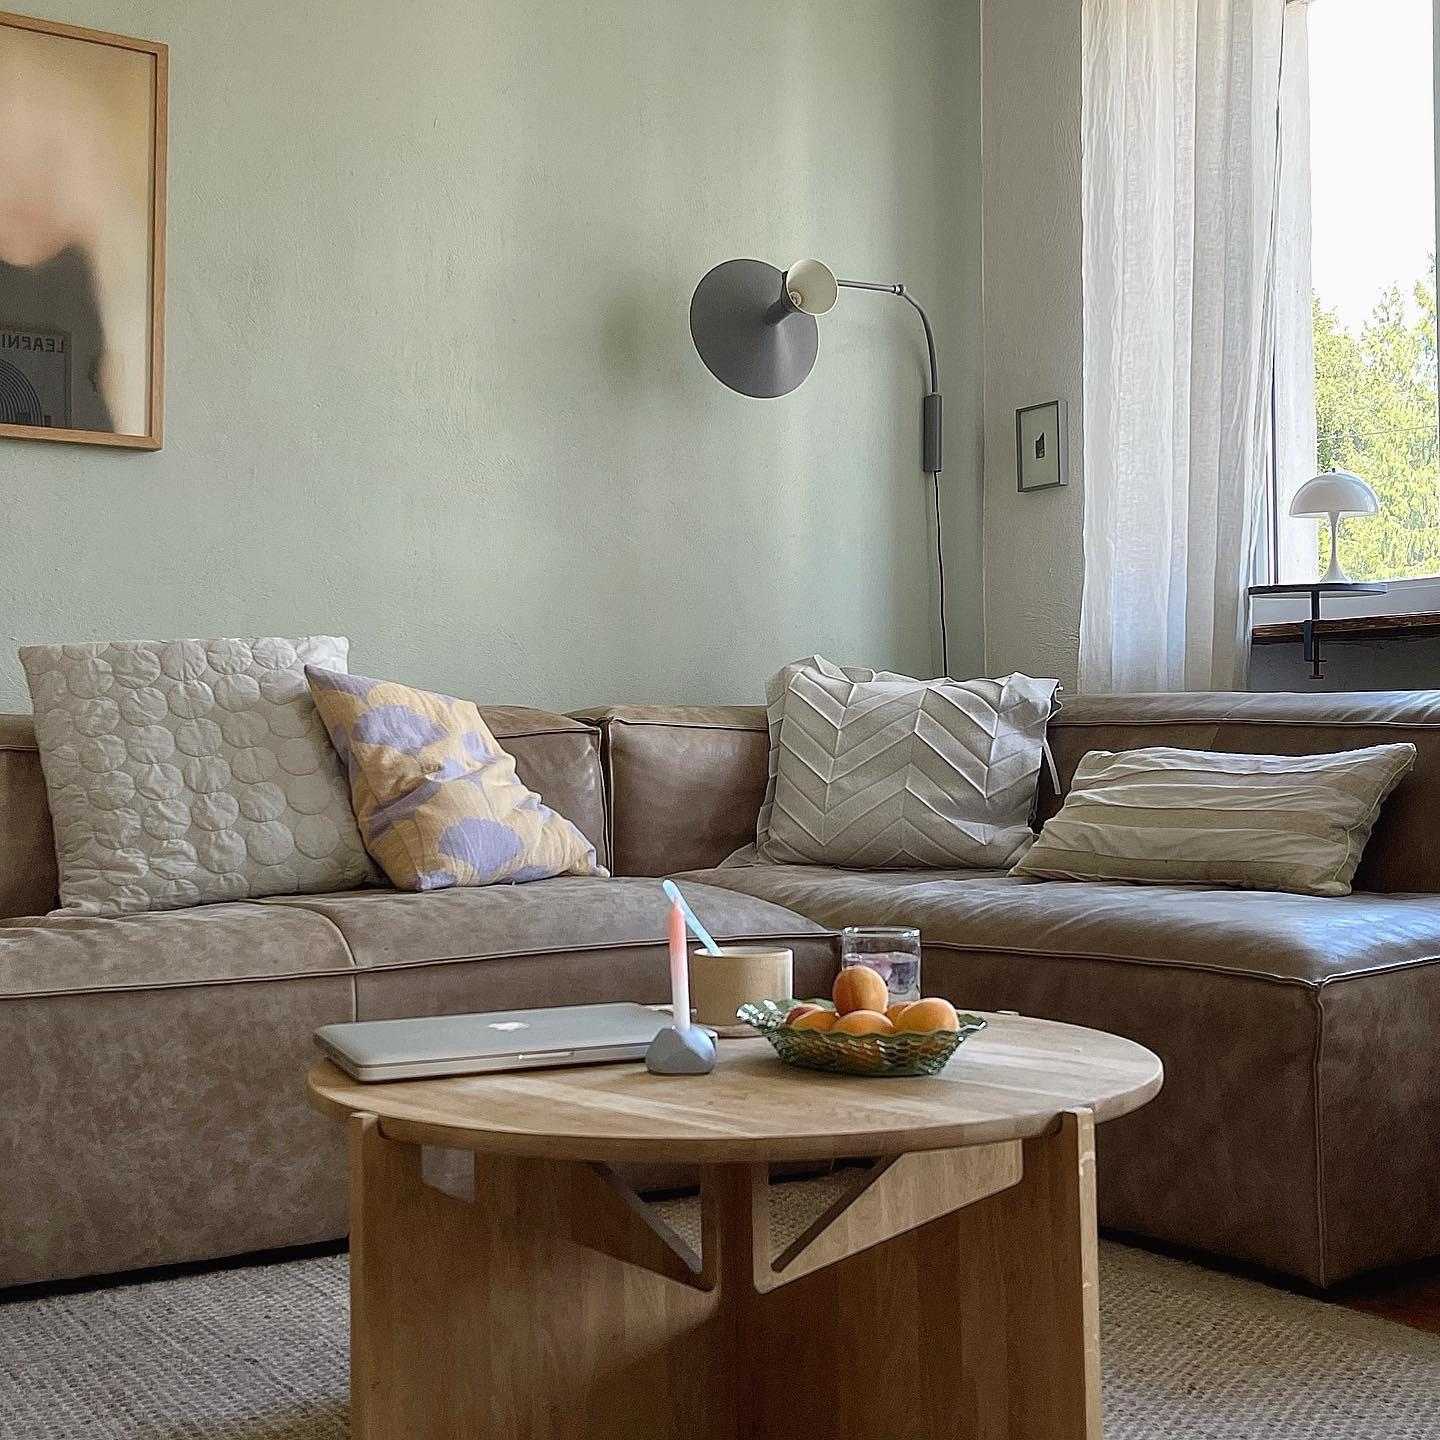 #livingroom #homedecor #interior#decoration#altbau #homestory#wohnzimmer #couchstyle#scandinavisch#living#cozy#kaffee